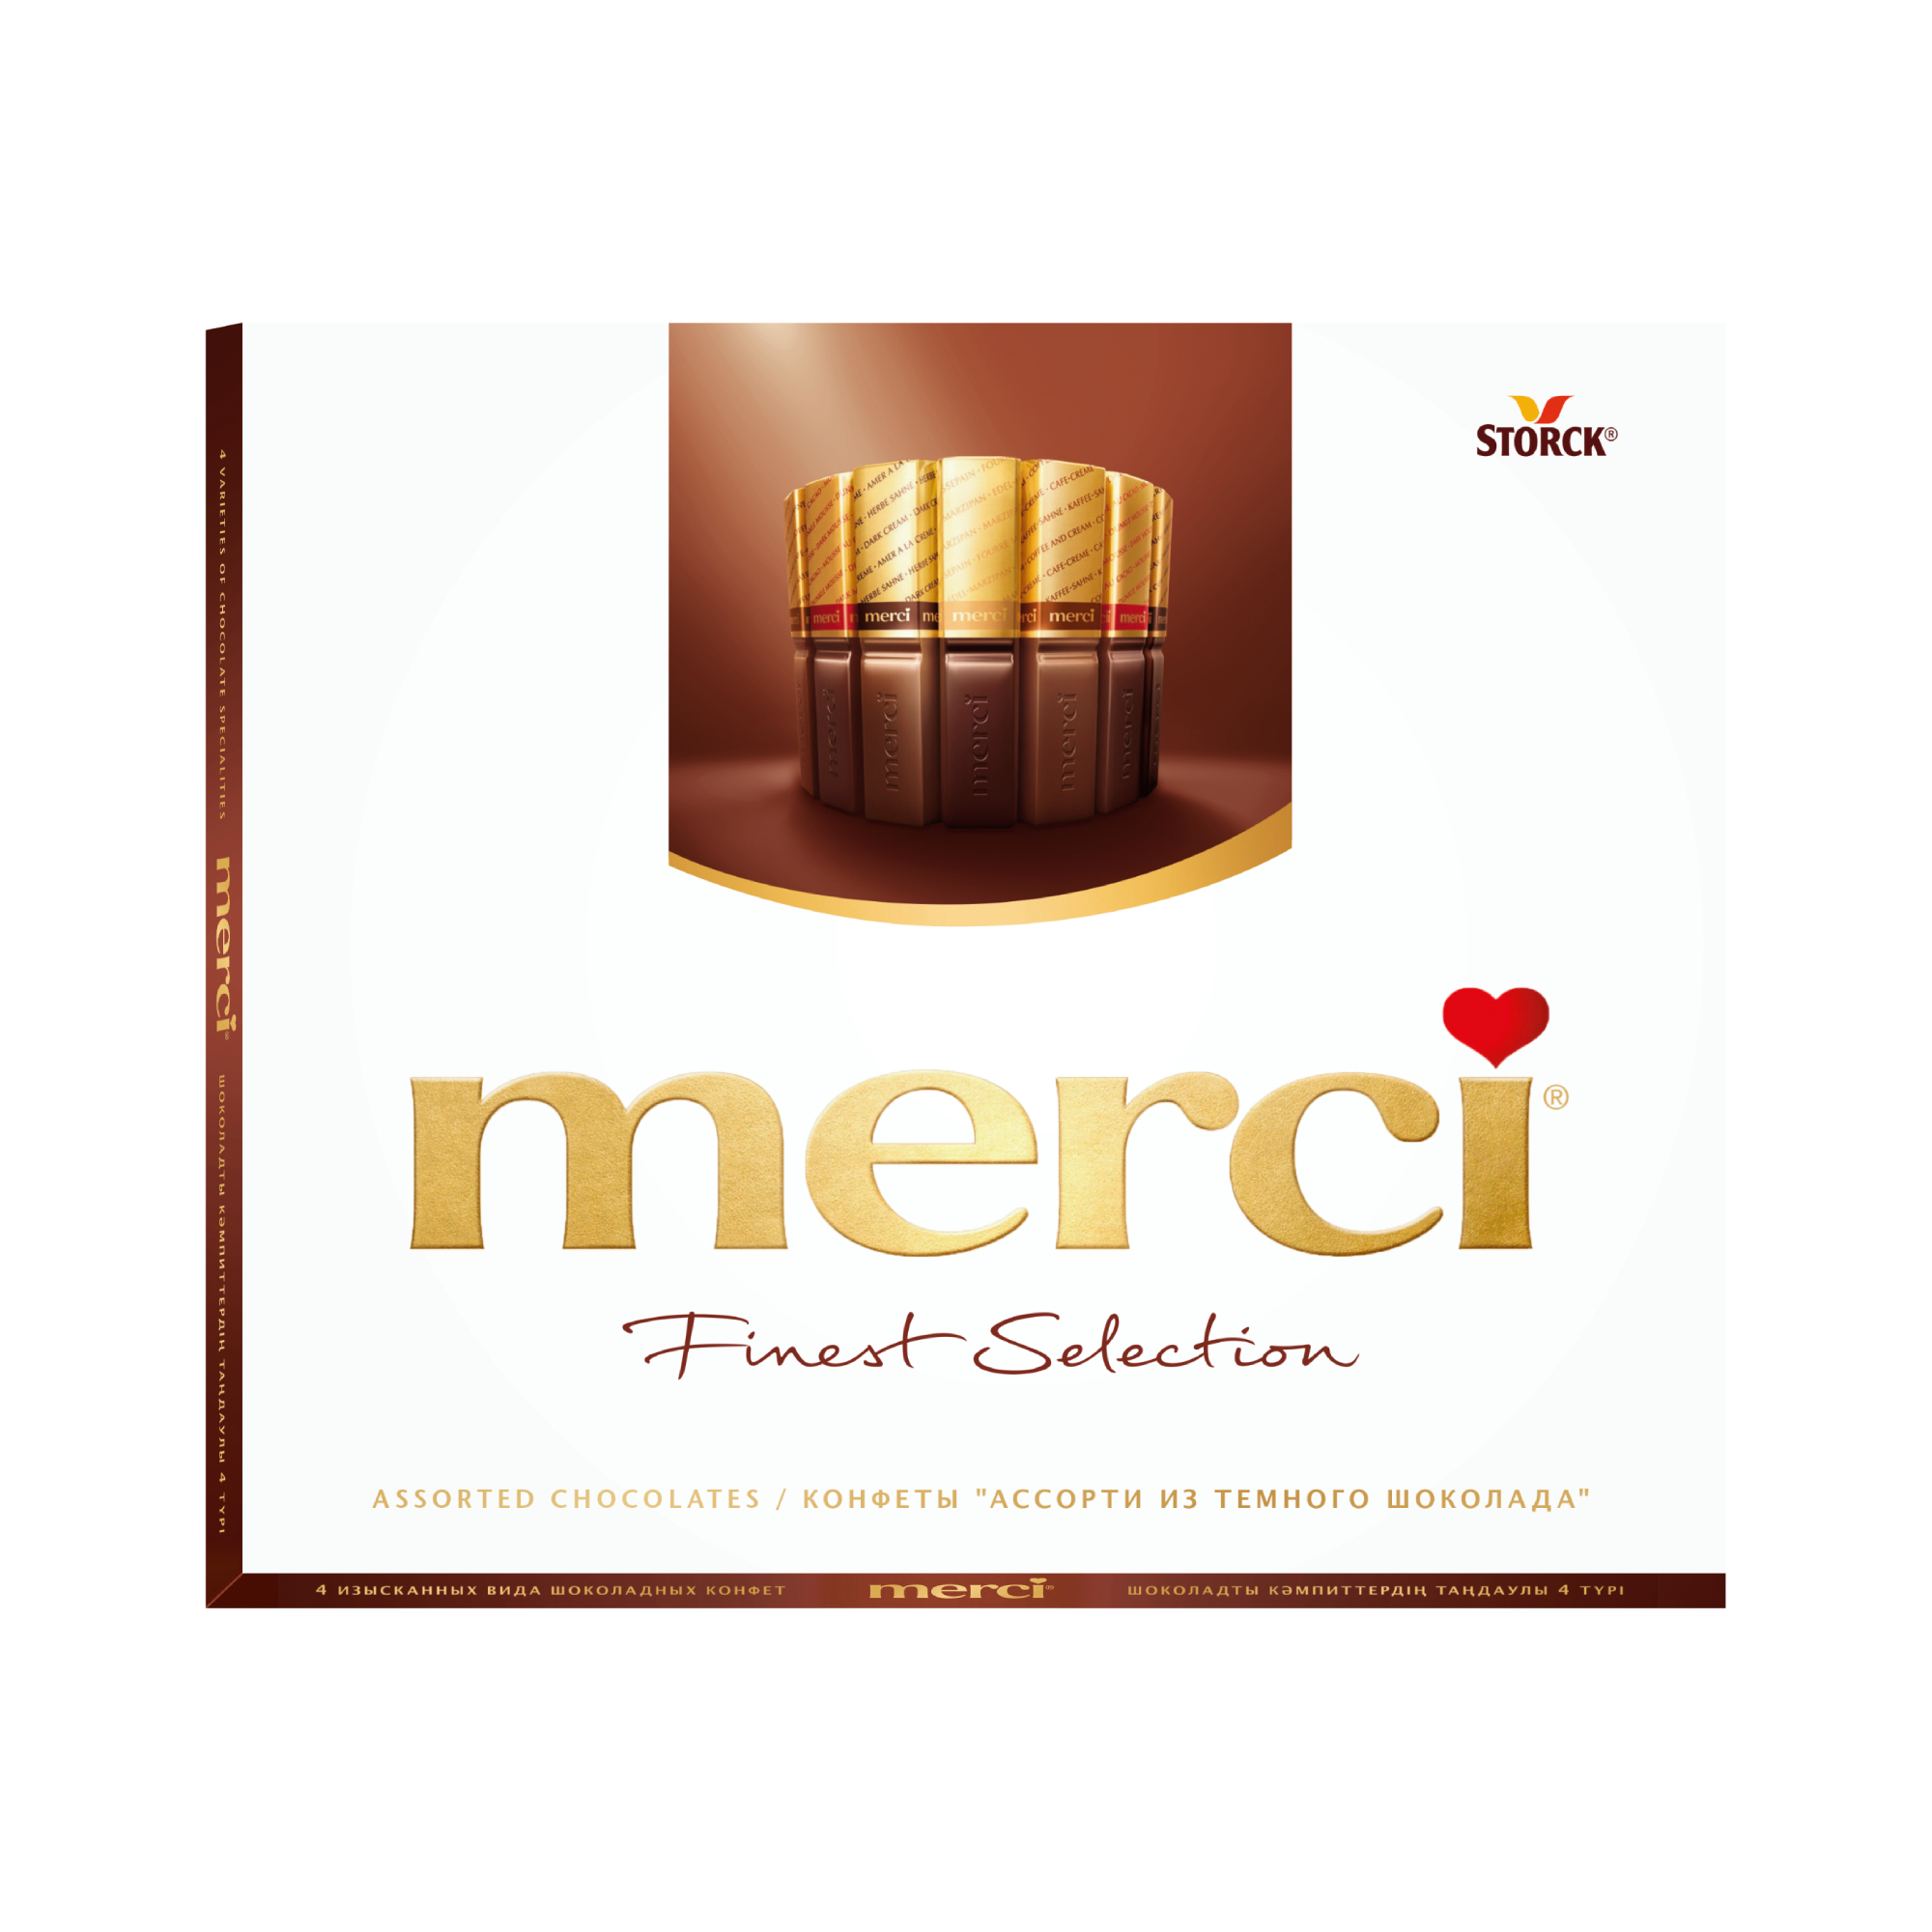 Шоколадный набор Storck Merci Ассорти 4 вида с начинкой из шоколадного мусса 210 г